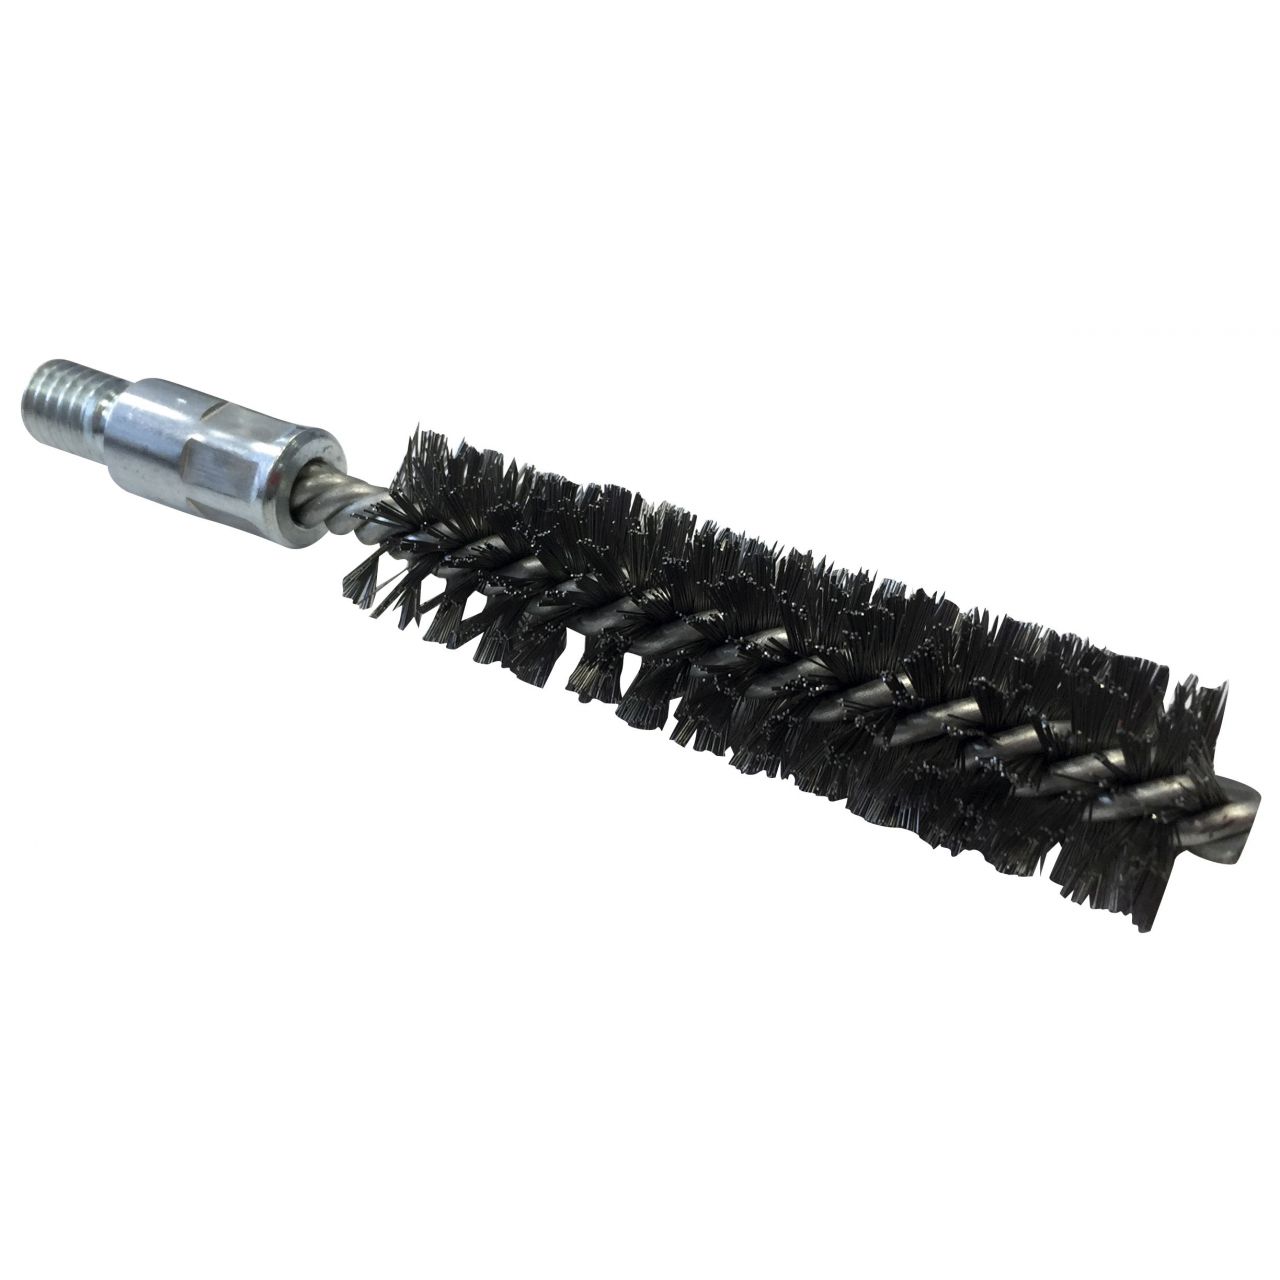 Cepillo limpiatubos de acero con rosca 1/2”BSW Ø 55 mm (100x160x0.3 mm)